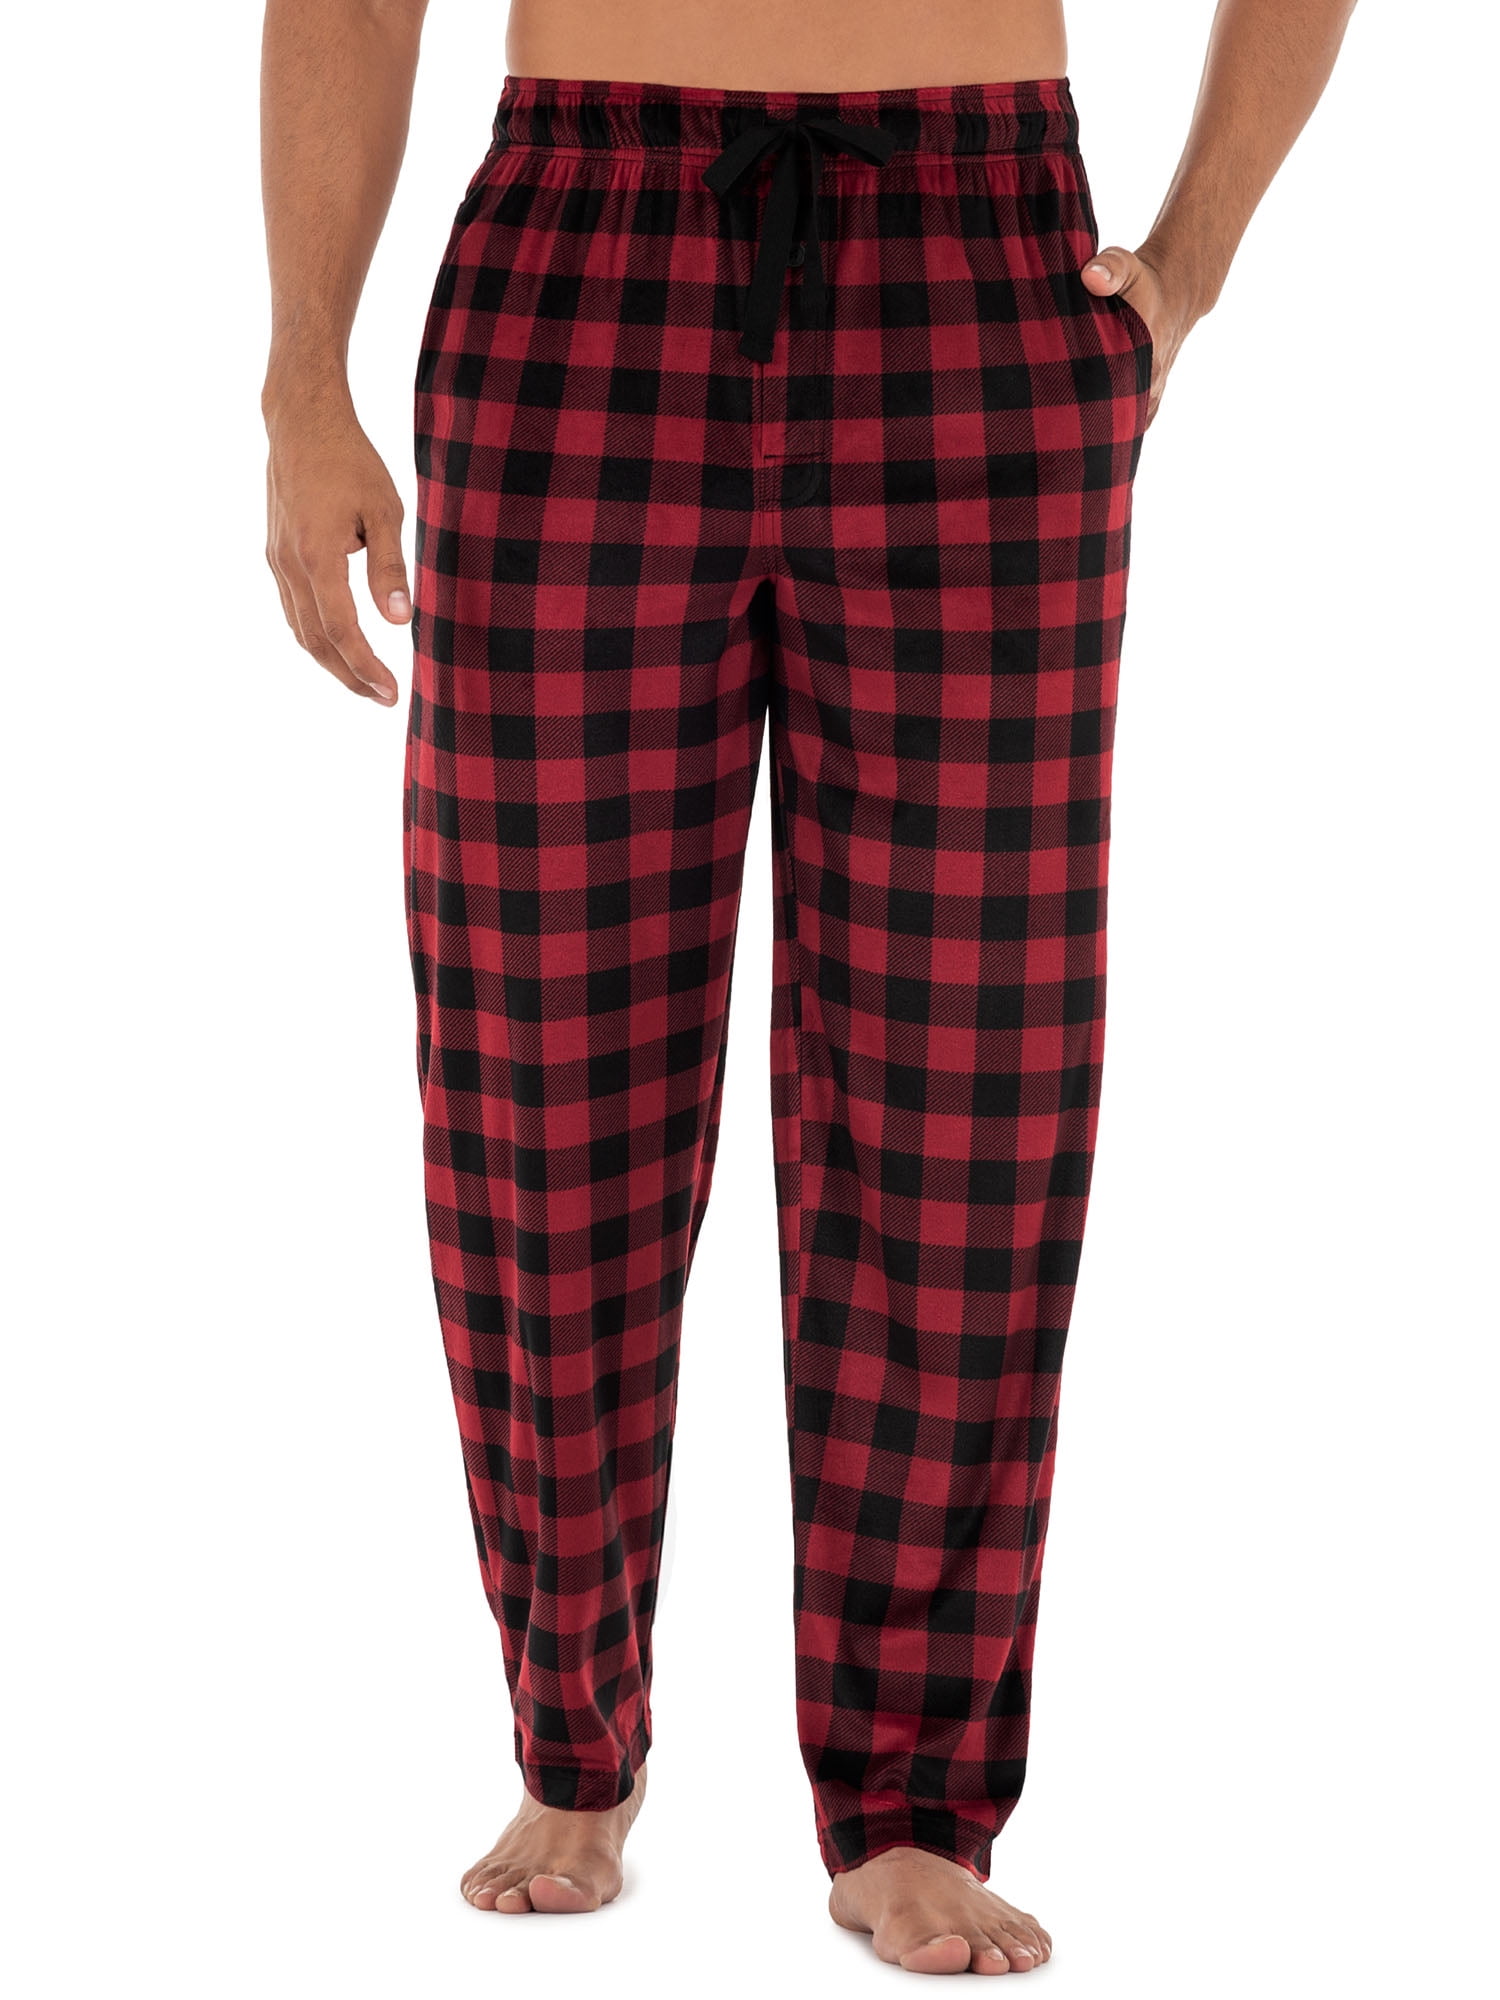 Van Heusen Sleepwear Men's Black/Grey Plaid Flannel Pajama Pants Choose Size 